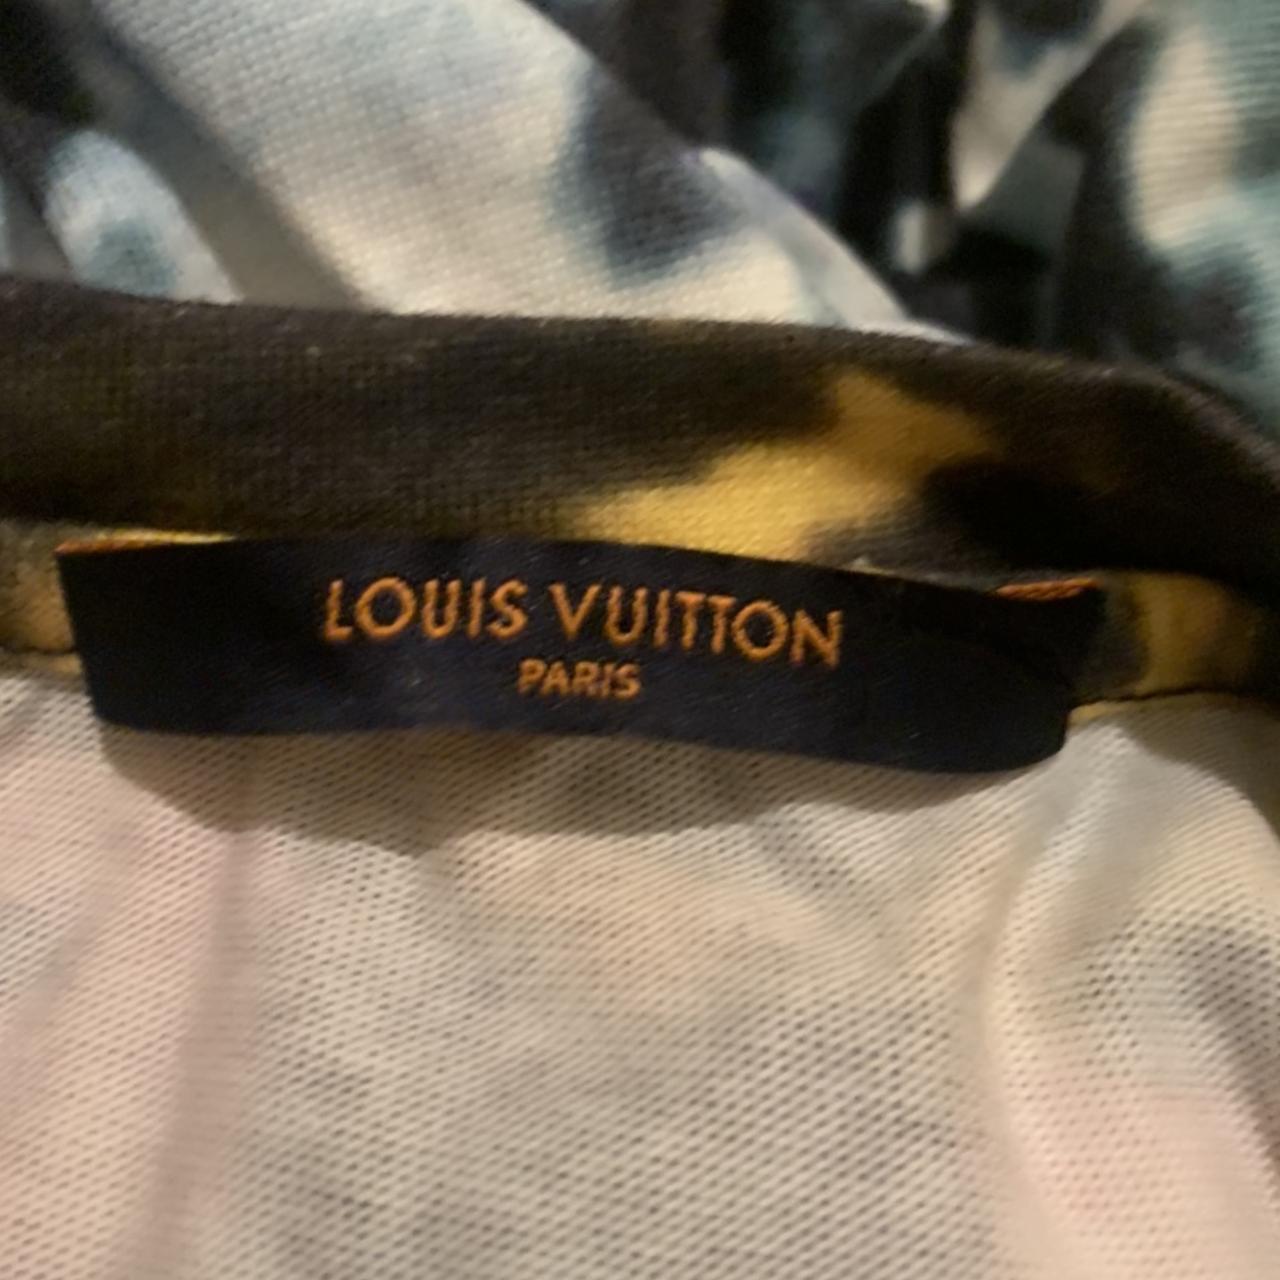 Louis Vuitton Tie Dye Shirt Size Medium Brand New - Depop